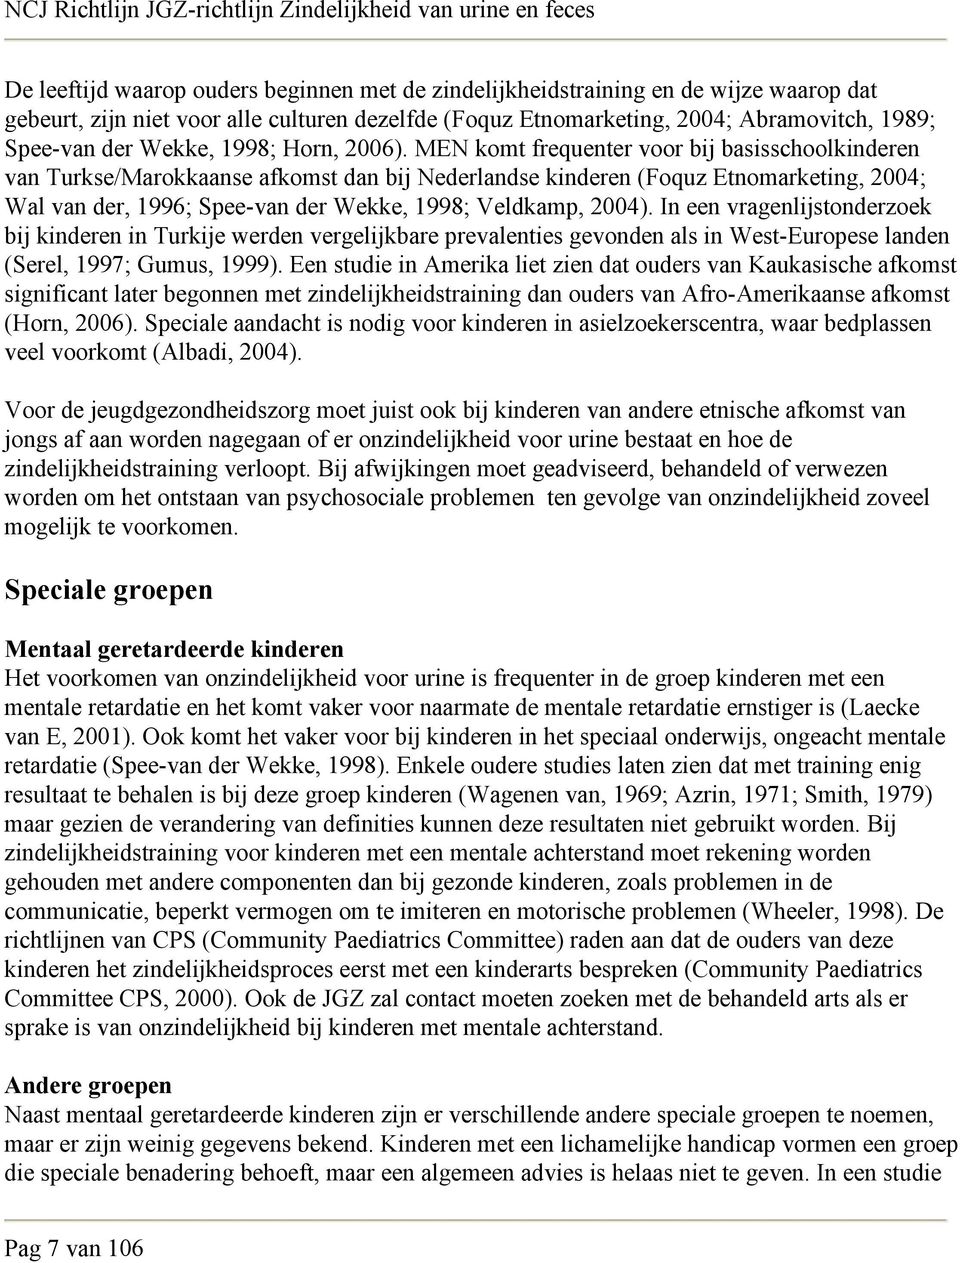 MEN komt frequenter voor bij basisschoolkinderen van Turkse/Marokkaanse afkomst dan bij Nederlandse kinderen (Foquz Etnomarketing, 2004; Wal van der, 1996; Spee-van der Wekke, 1998; Veldkamp, 2004).